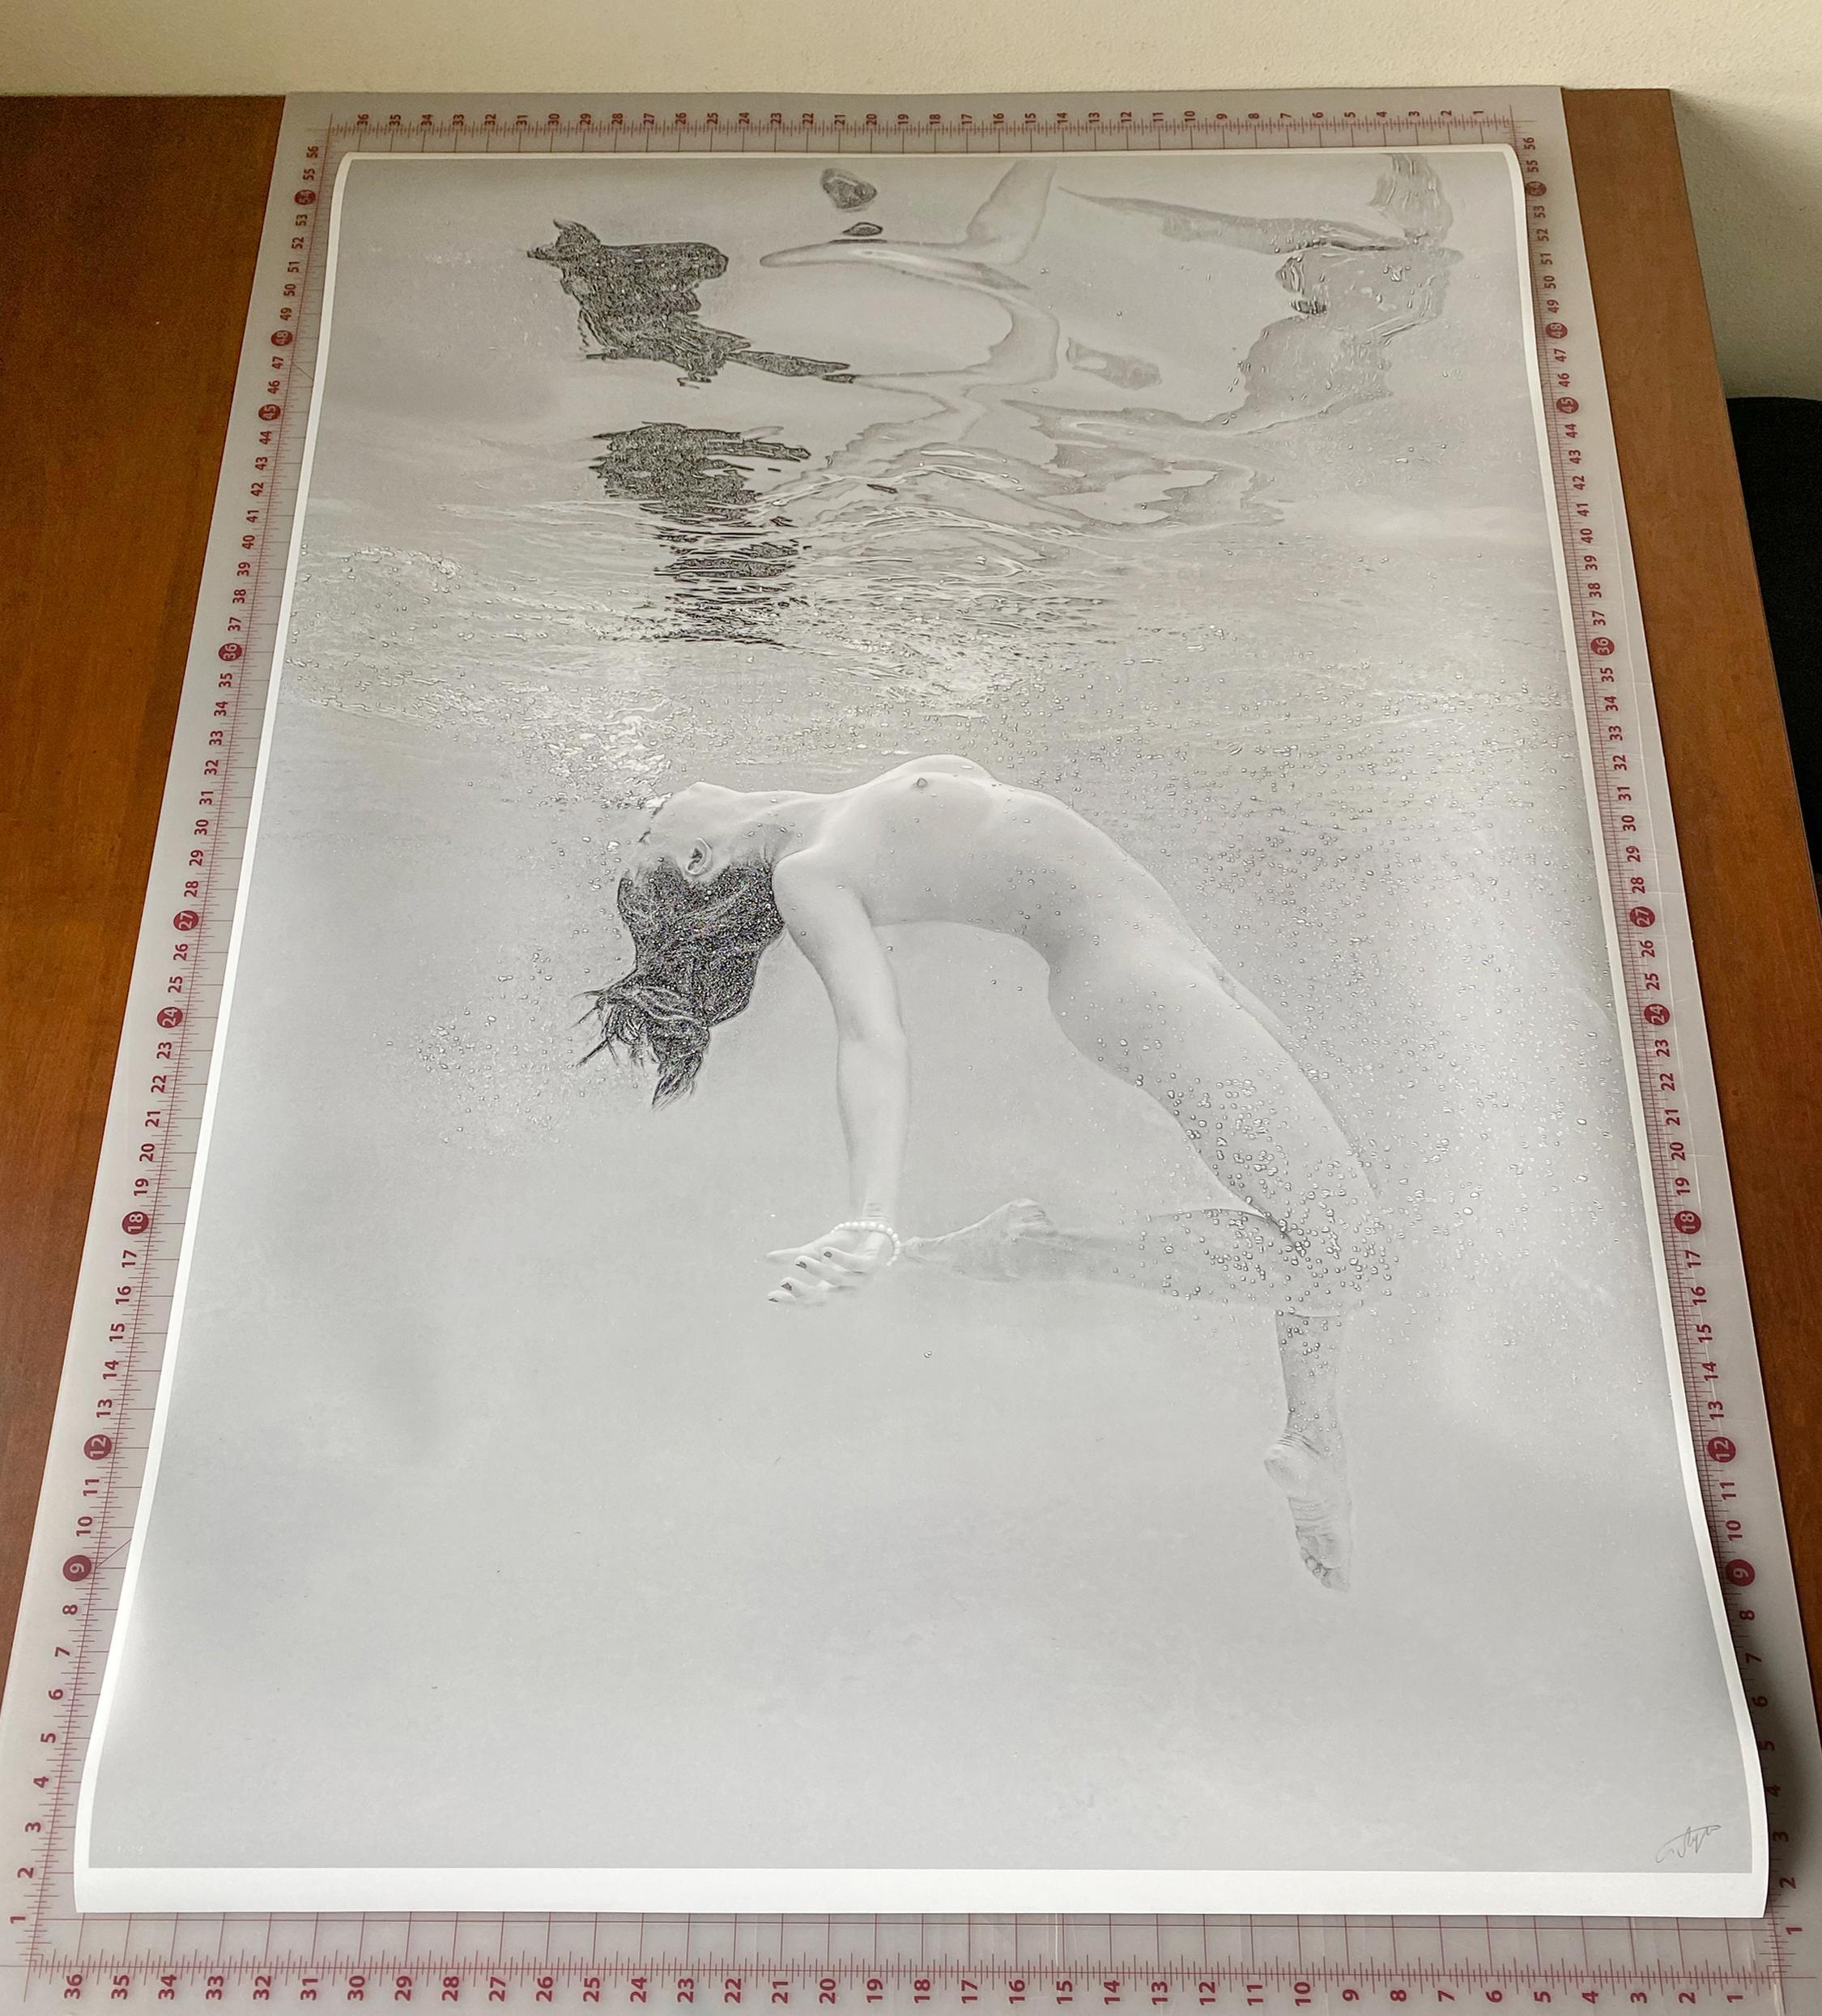 Photographie en noir et blanc d'une jeune femme nue plongeant dans une piscine. La femme remonte des profondeurs vers la surface et son corps se reflète dans la surface interne de l'eau.

Tirage original au pigment d'archives de qualité galerie,